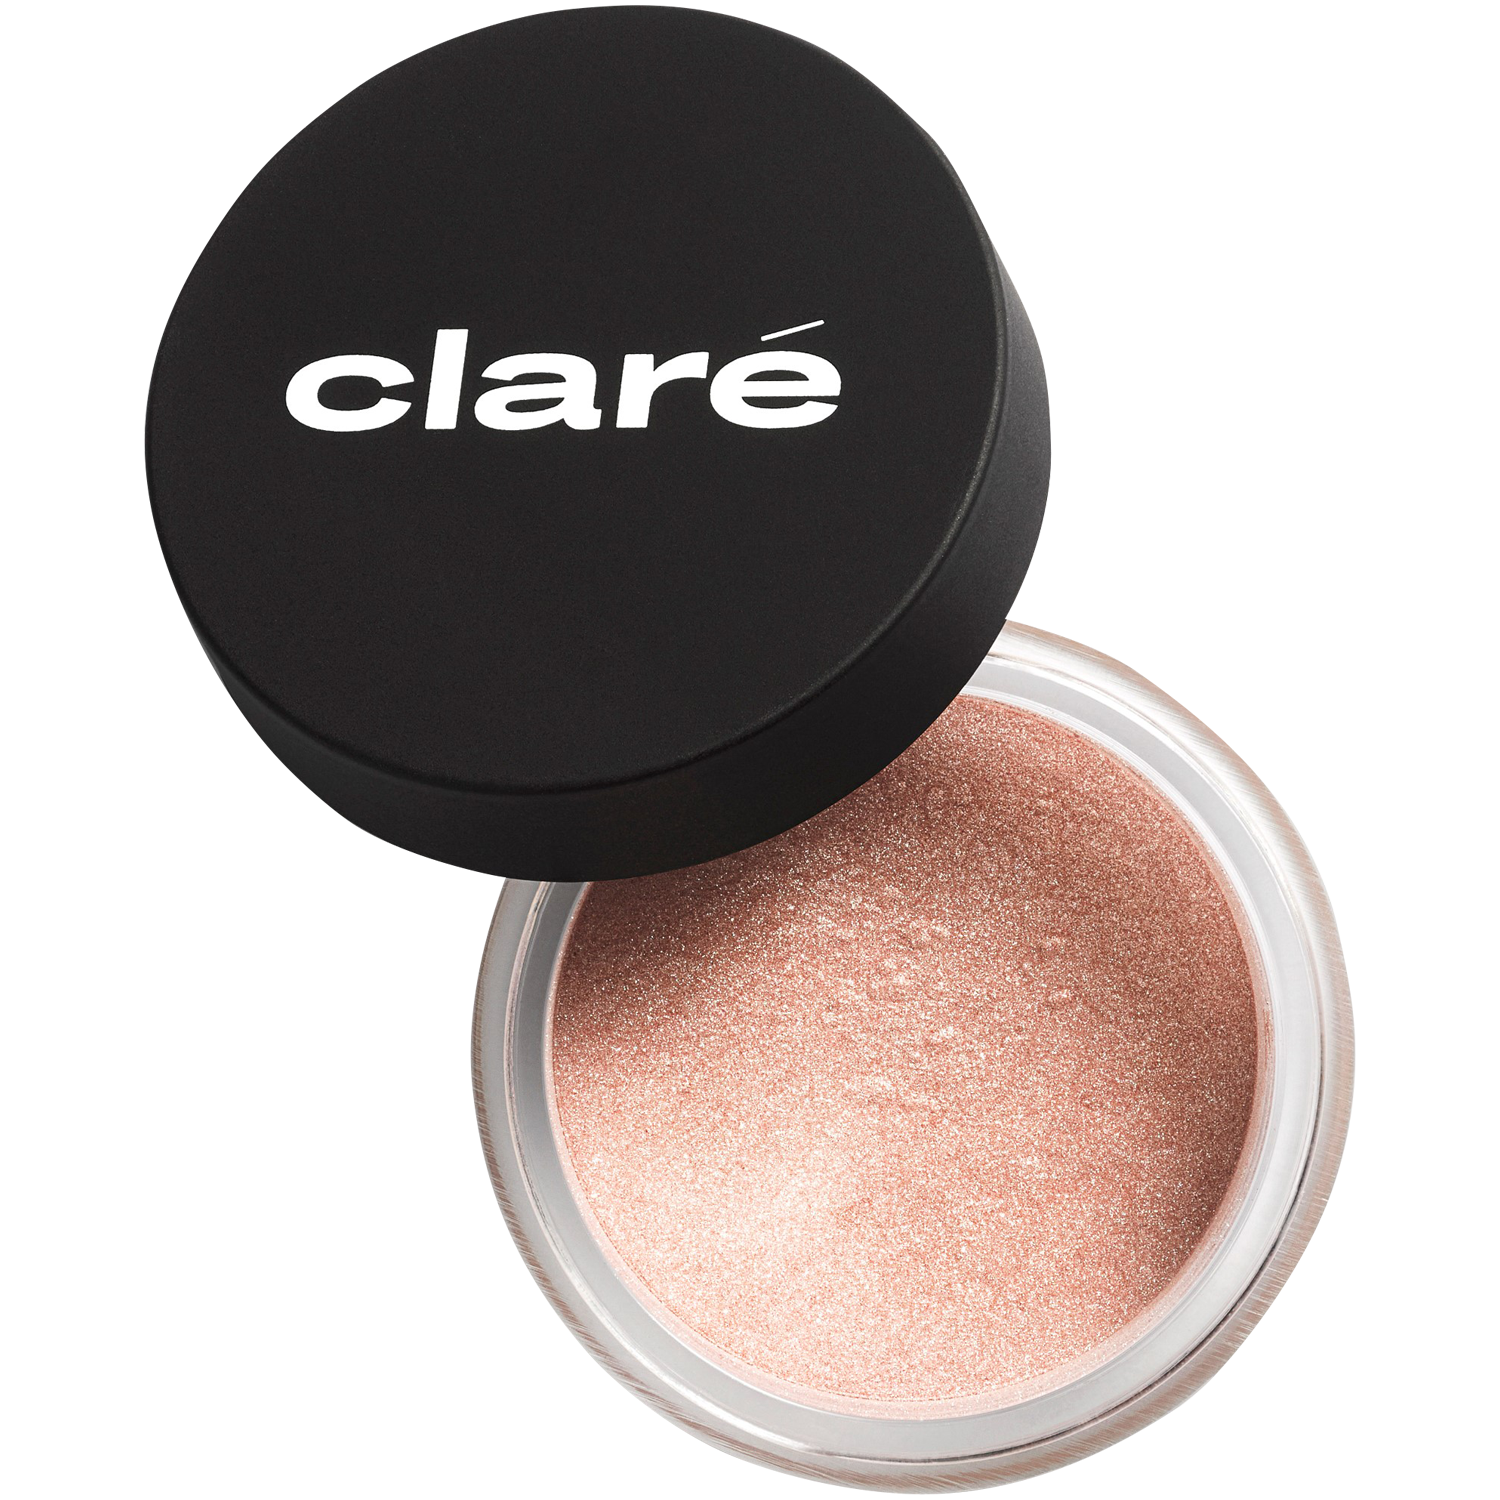 Атласные тени для век свежего телесного цвета 886 Claré Clare Makeup, 1 гр атласные тени для век холодного телесного цвета 900 claré clare makeup 1 гр